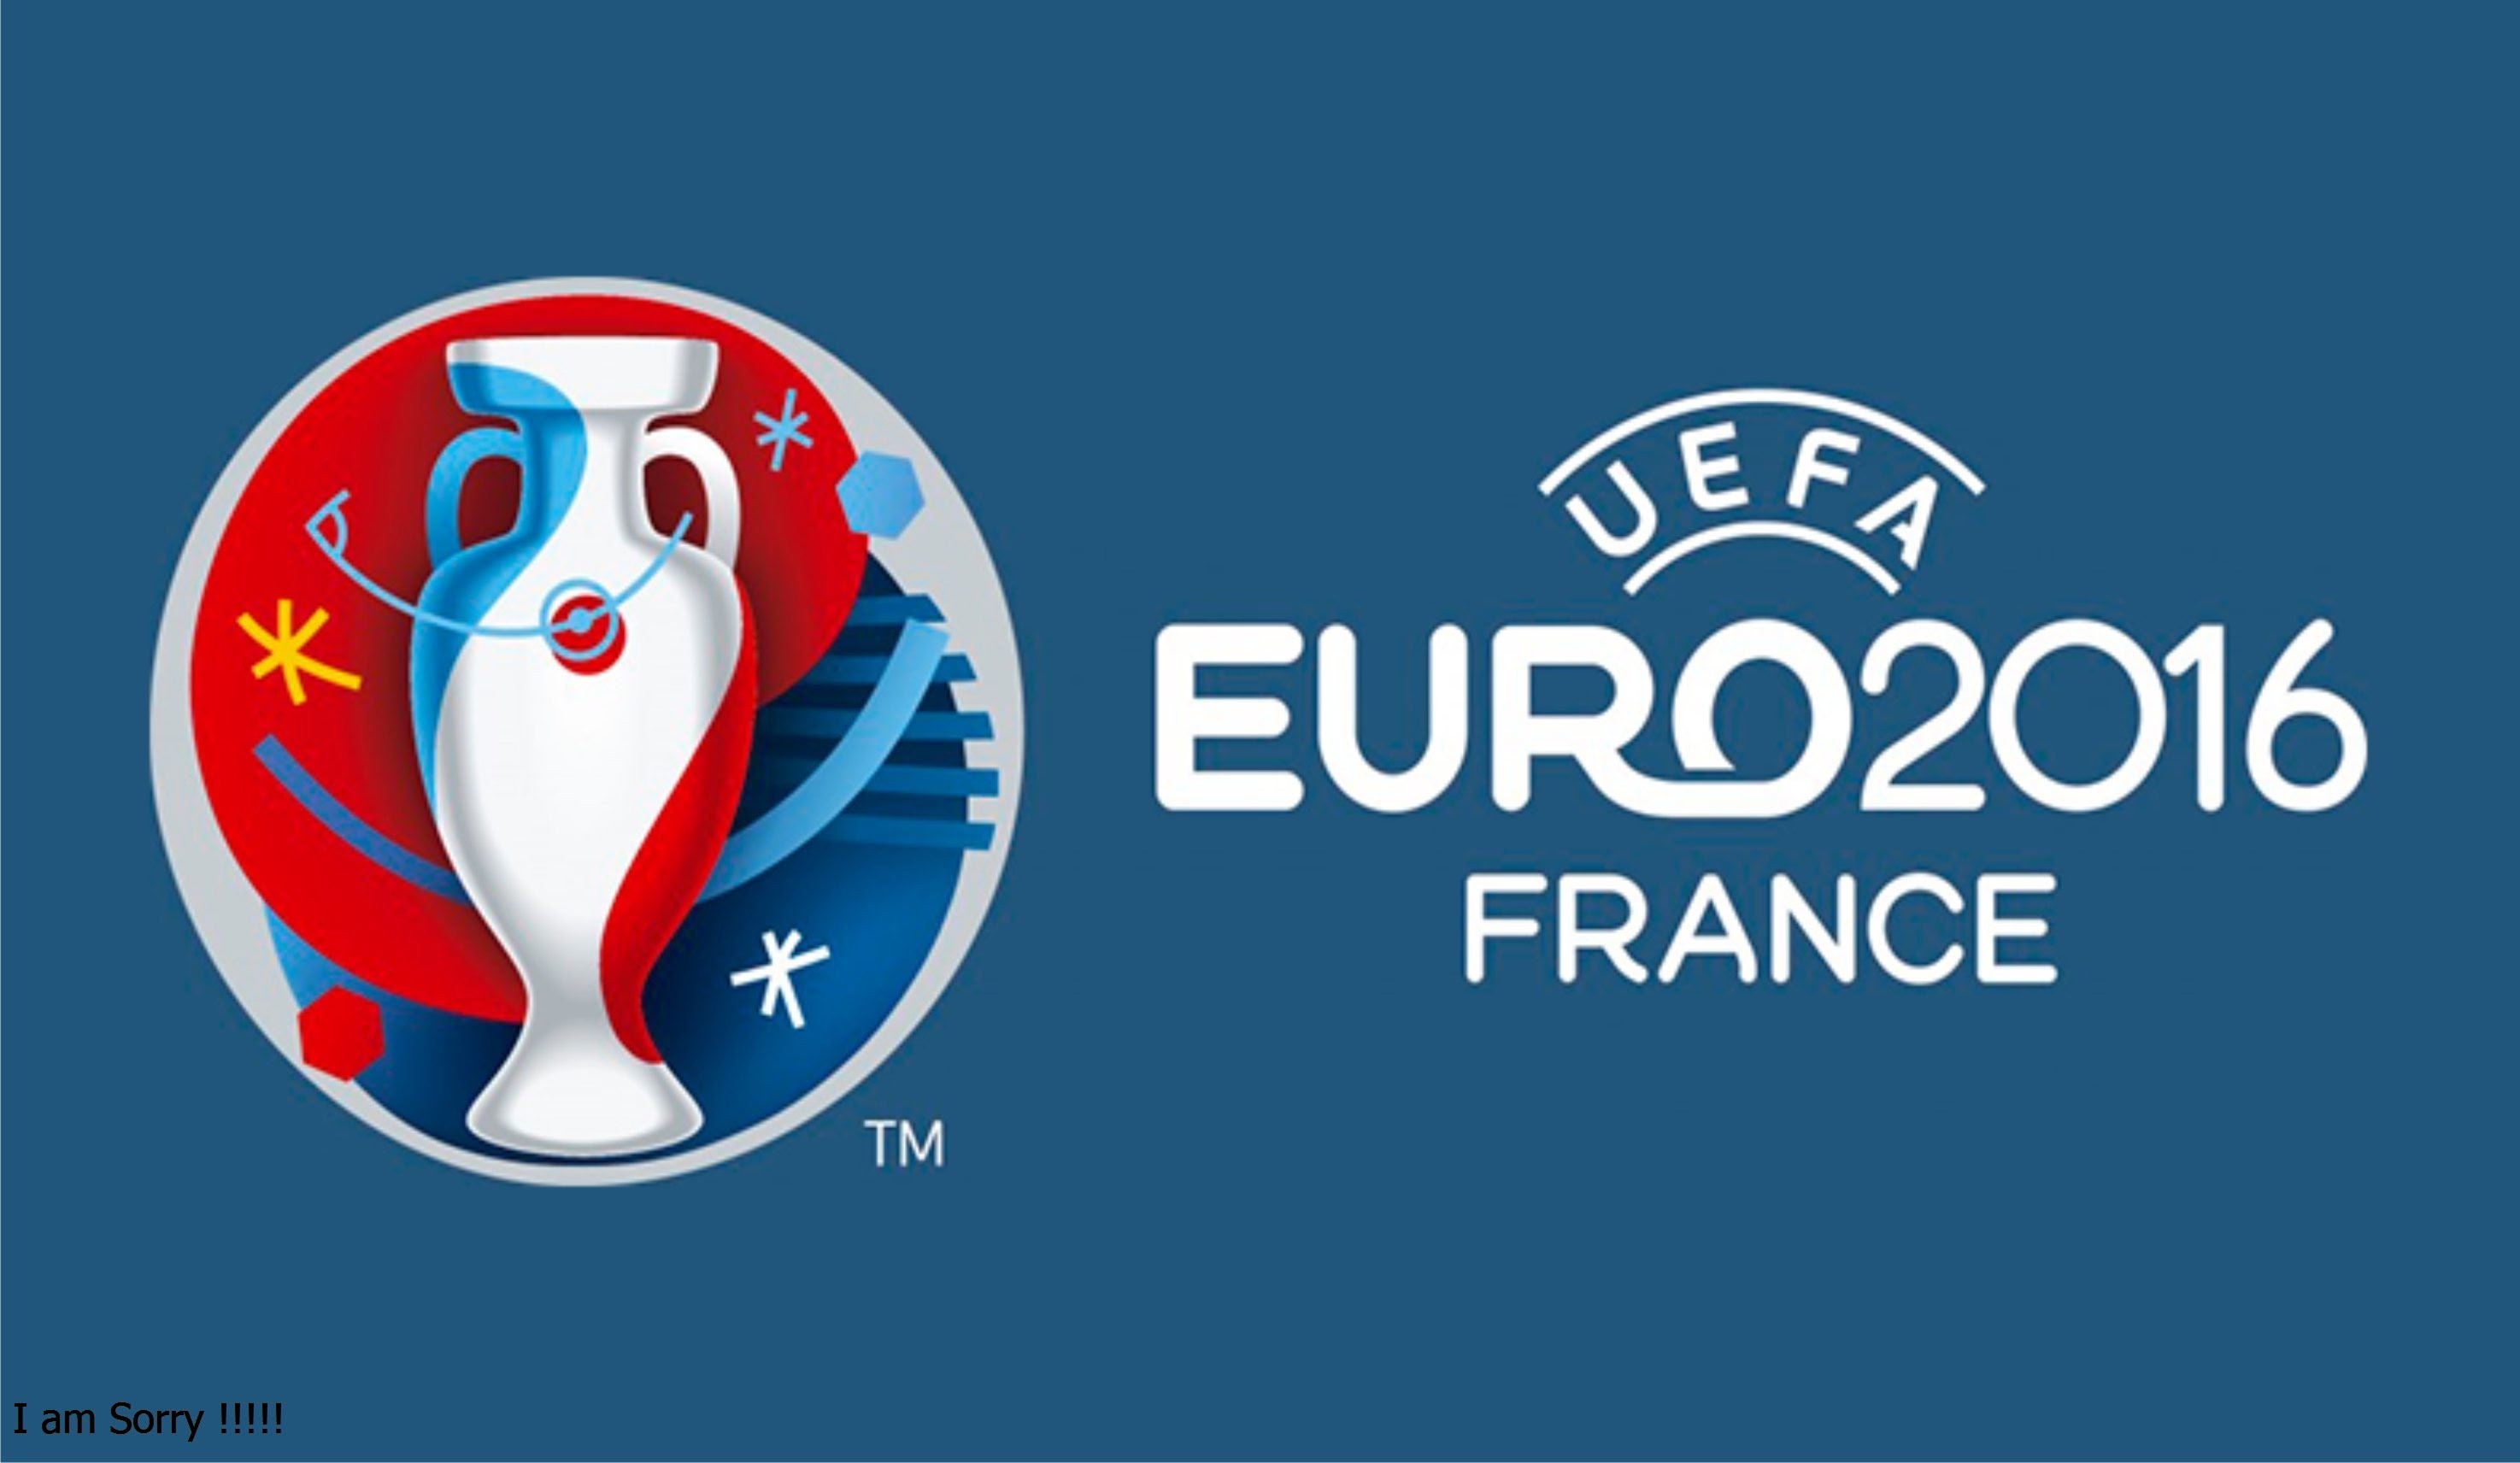 Descargar fondos de escritorio de Eurocopa 2016 HD